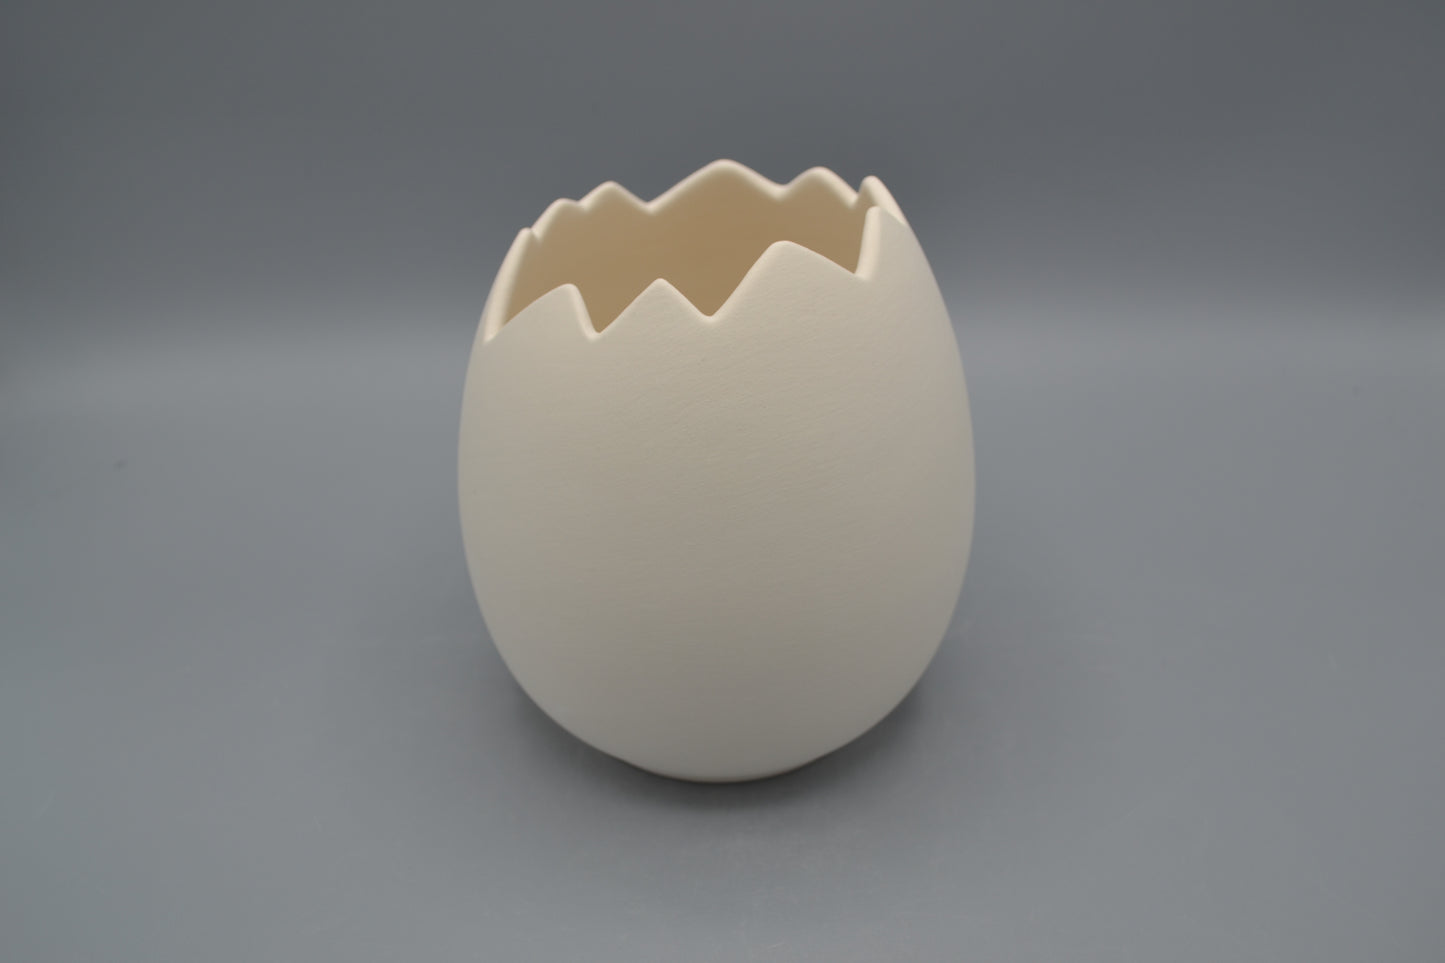 Uovo aperto di in ceramica semilavorata GREZZA da dipingere